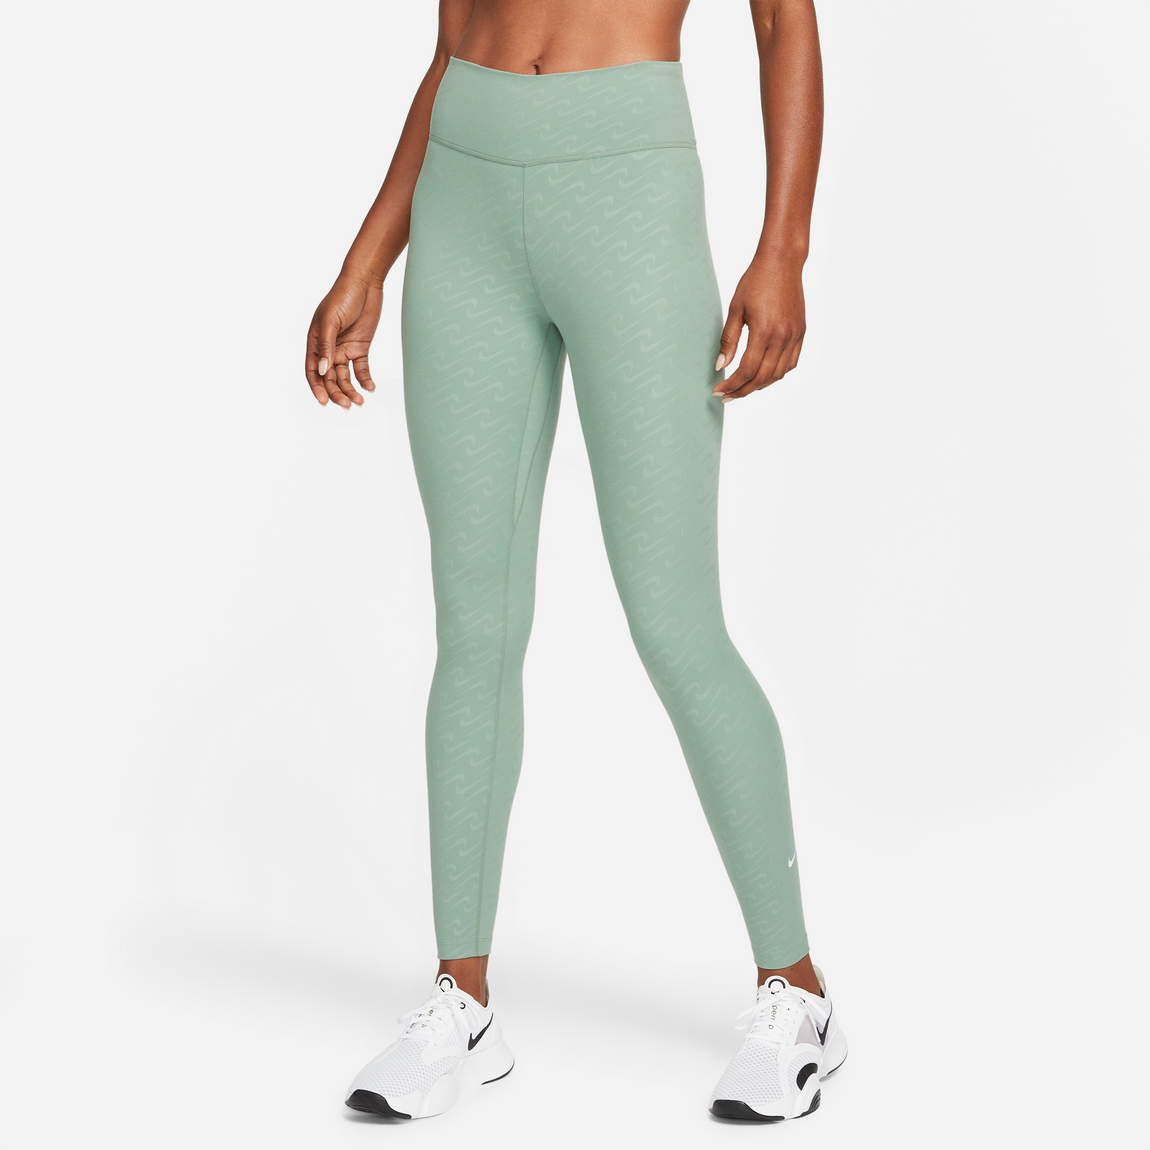 Nike Lime Green Leggings Size Small - Gem